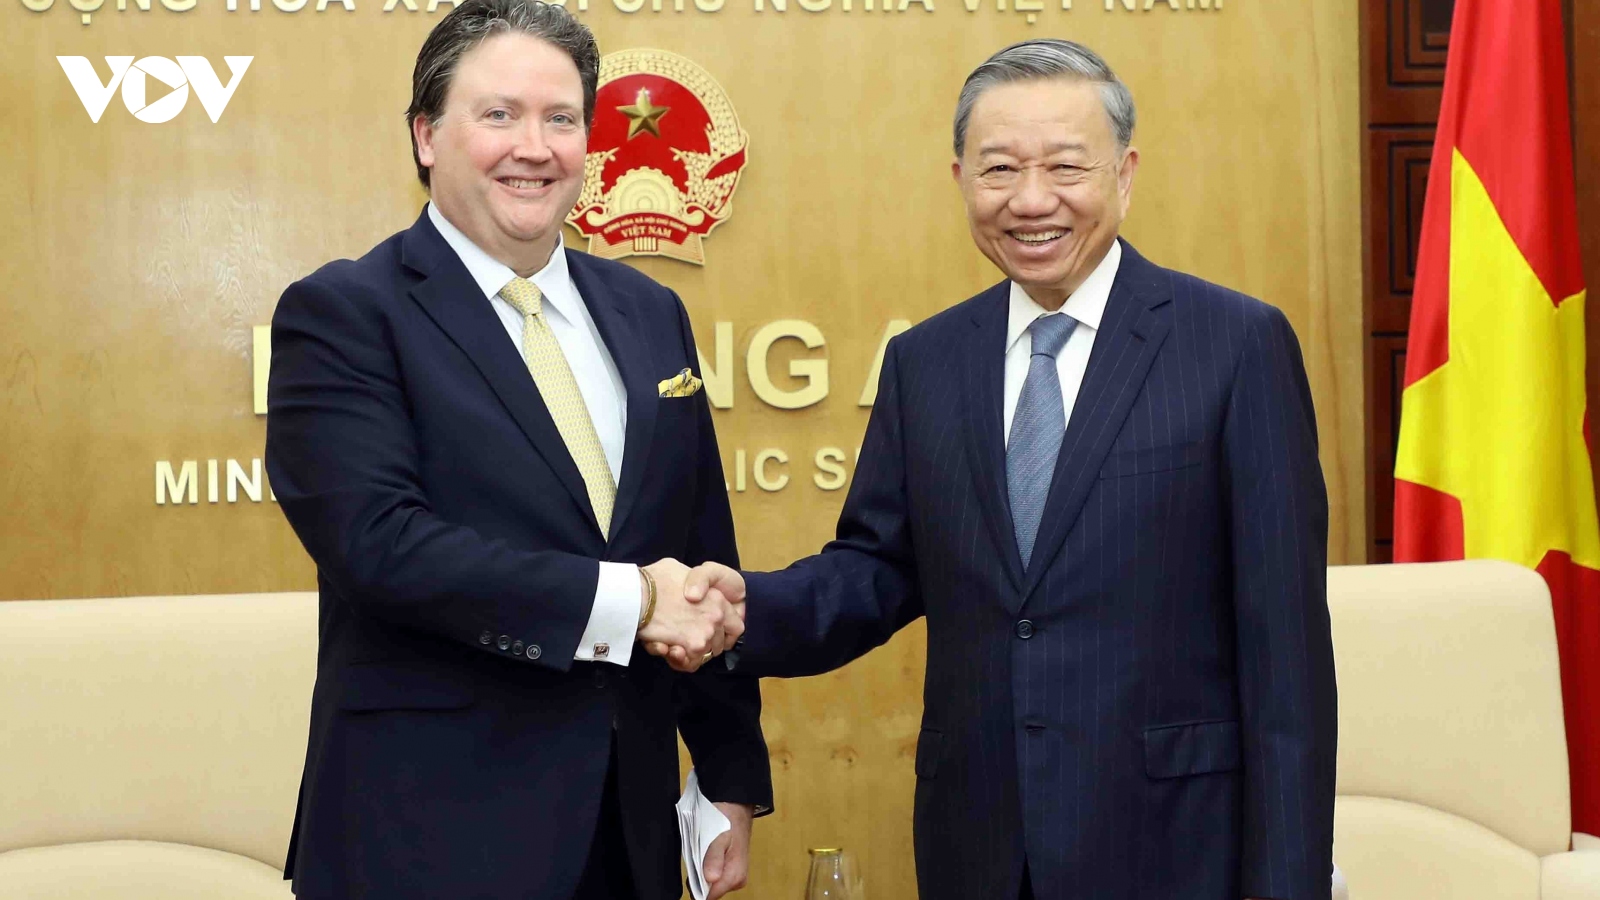 Bộ trưởng Tô Lâm tiếp Đại sứ  Hoa Kỳ tại Việt Nam Marc Knapper